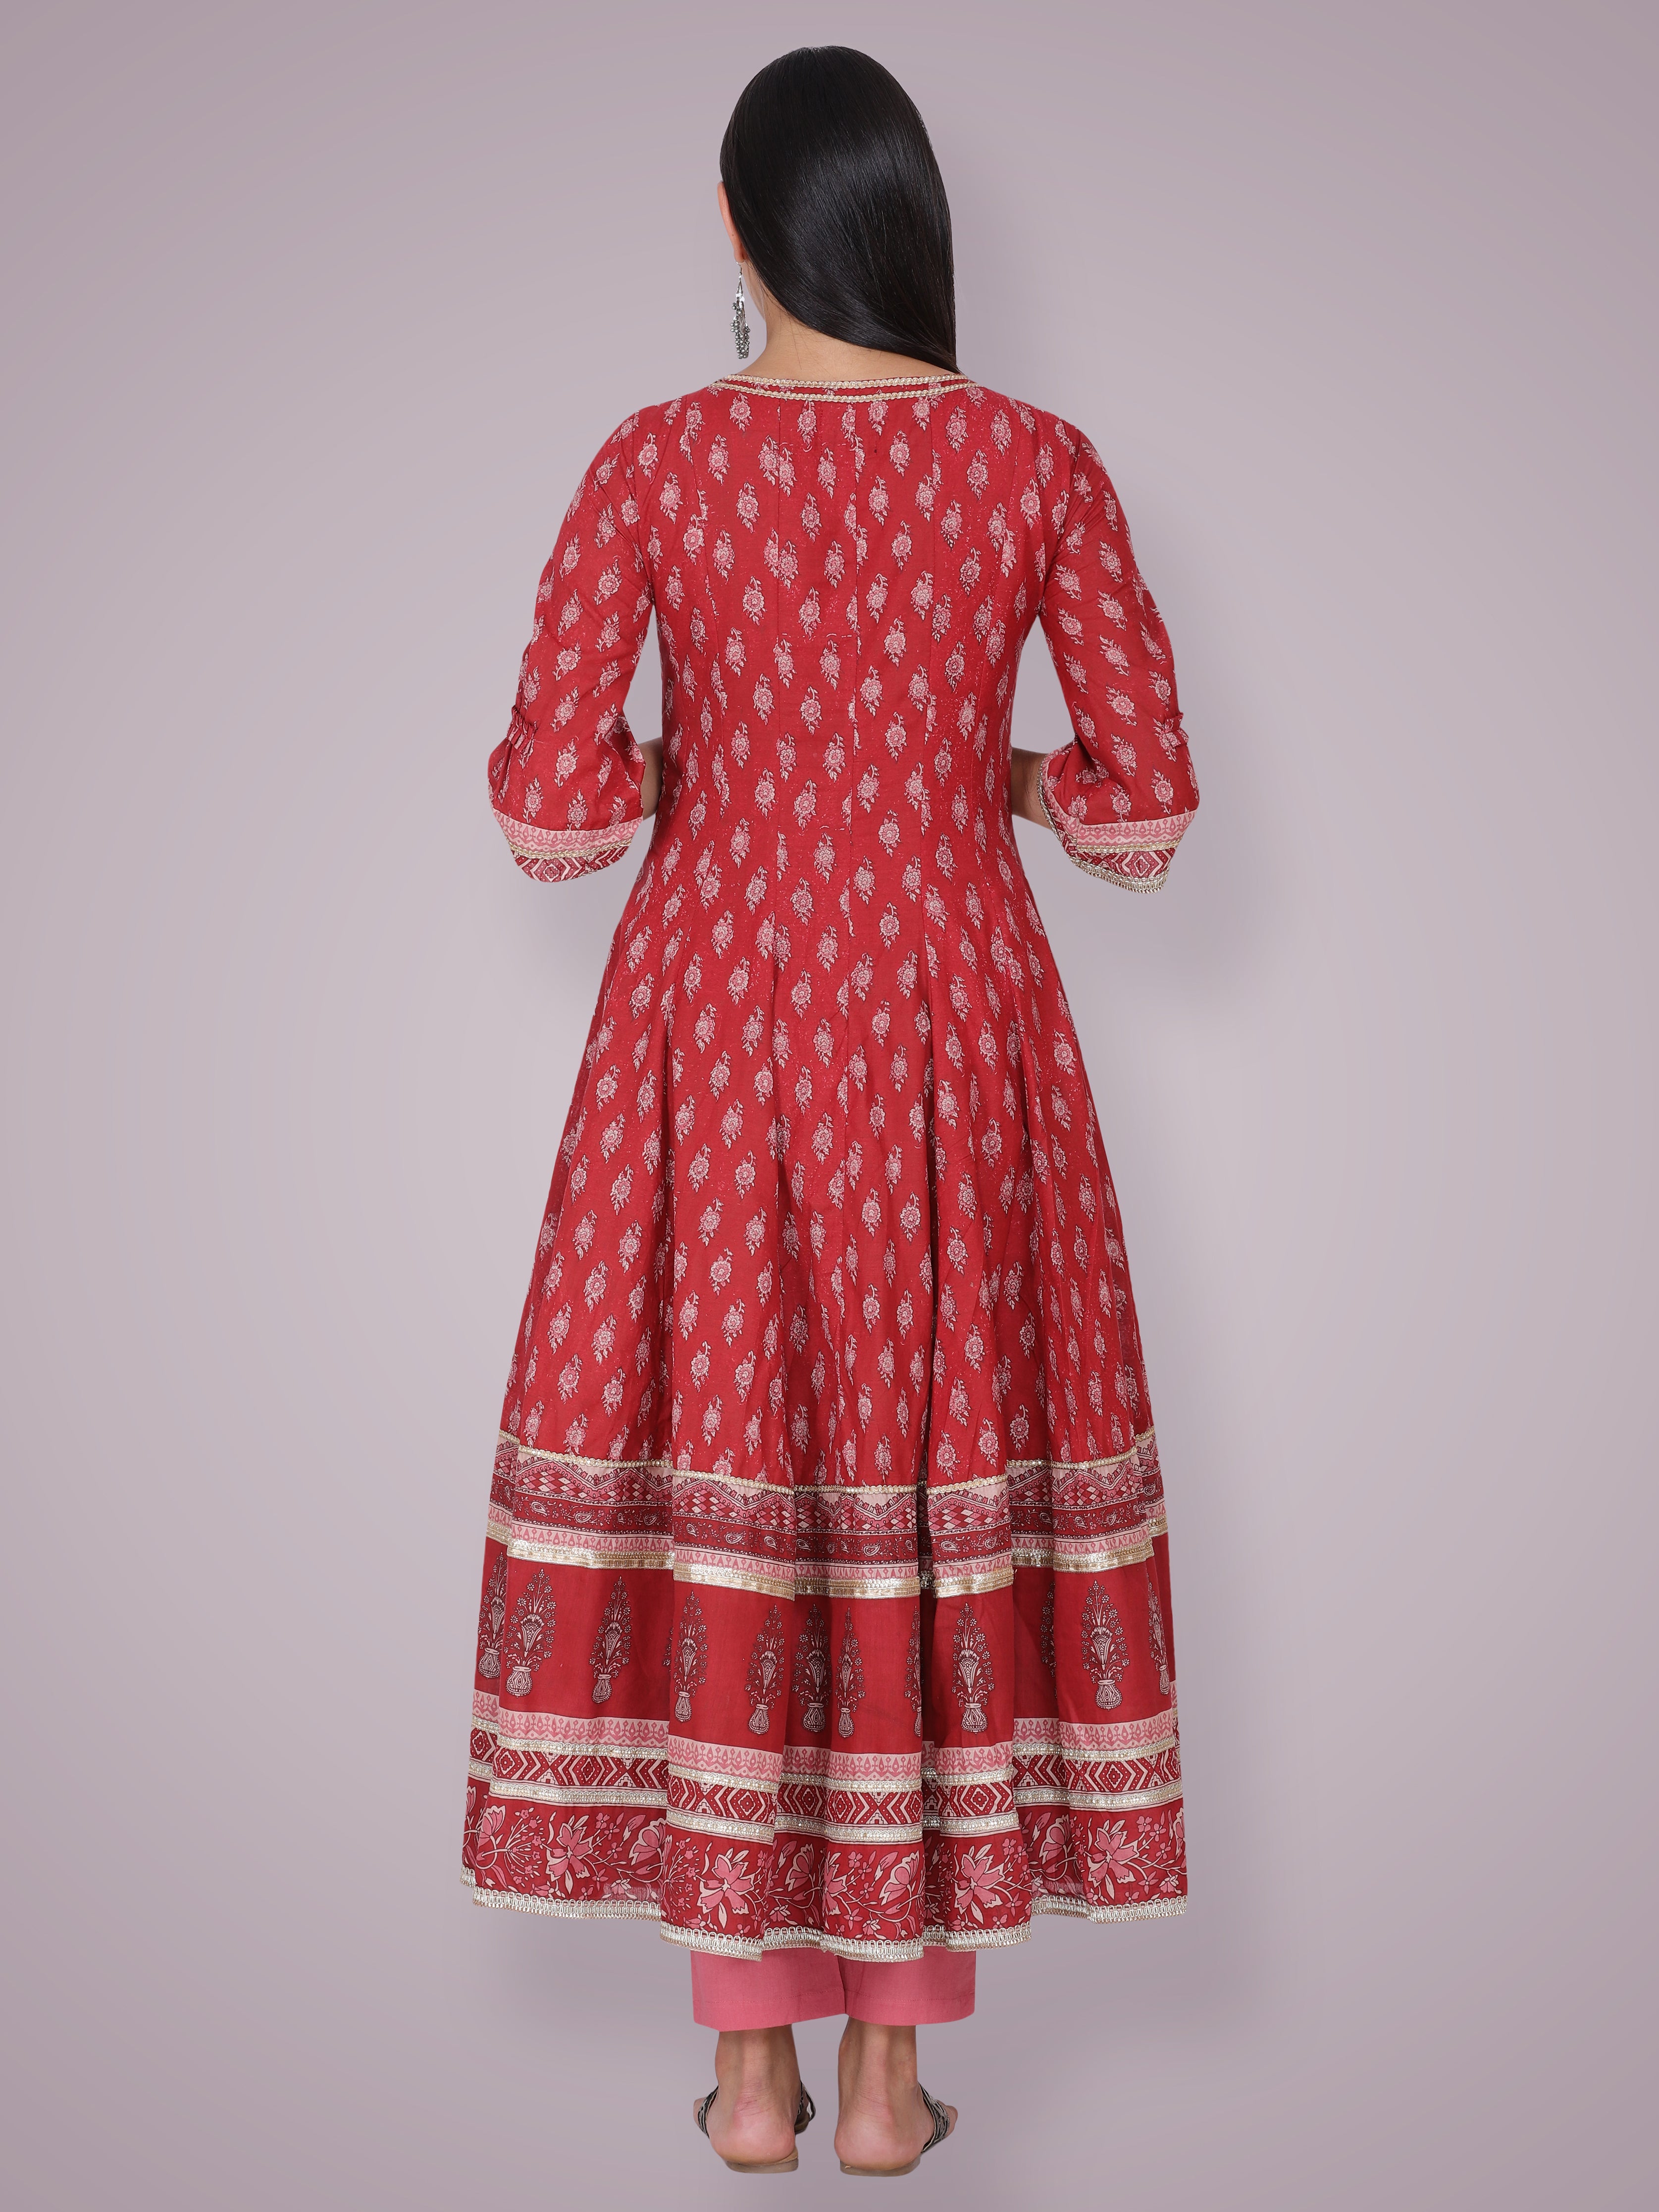 Ruhi Singh in Rust Red Hand Block Printed Anarkali Suit Set